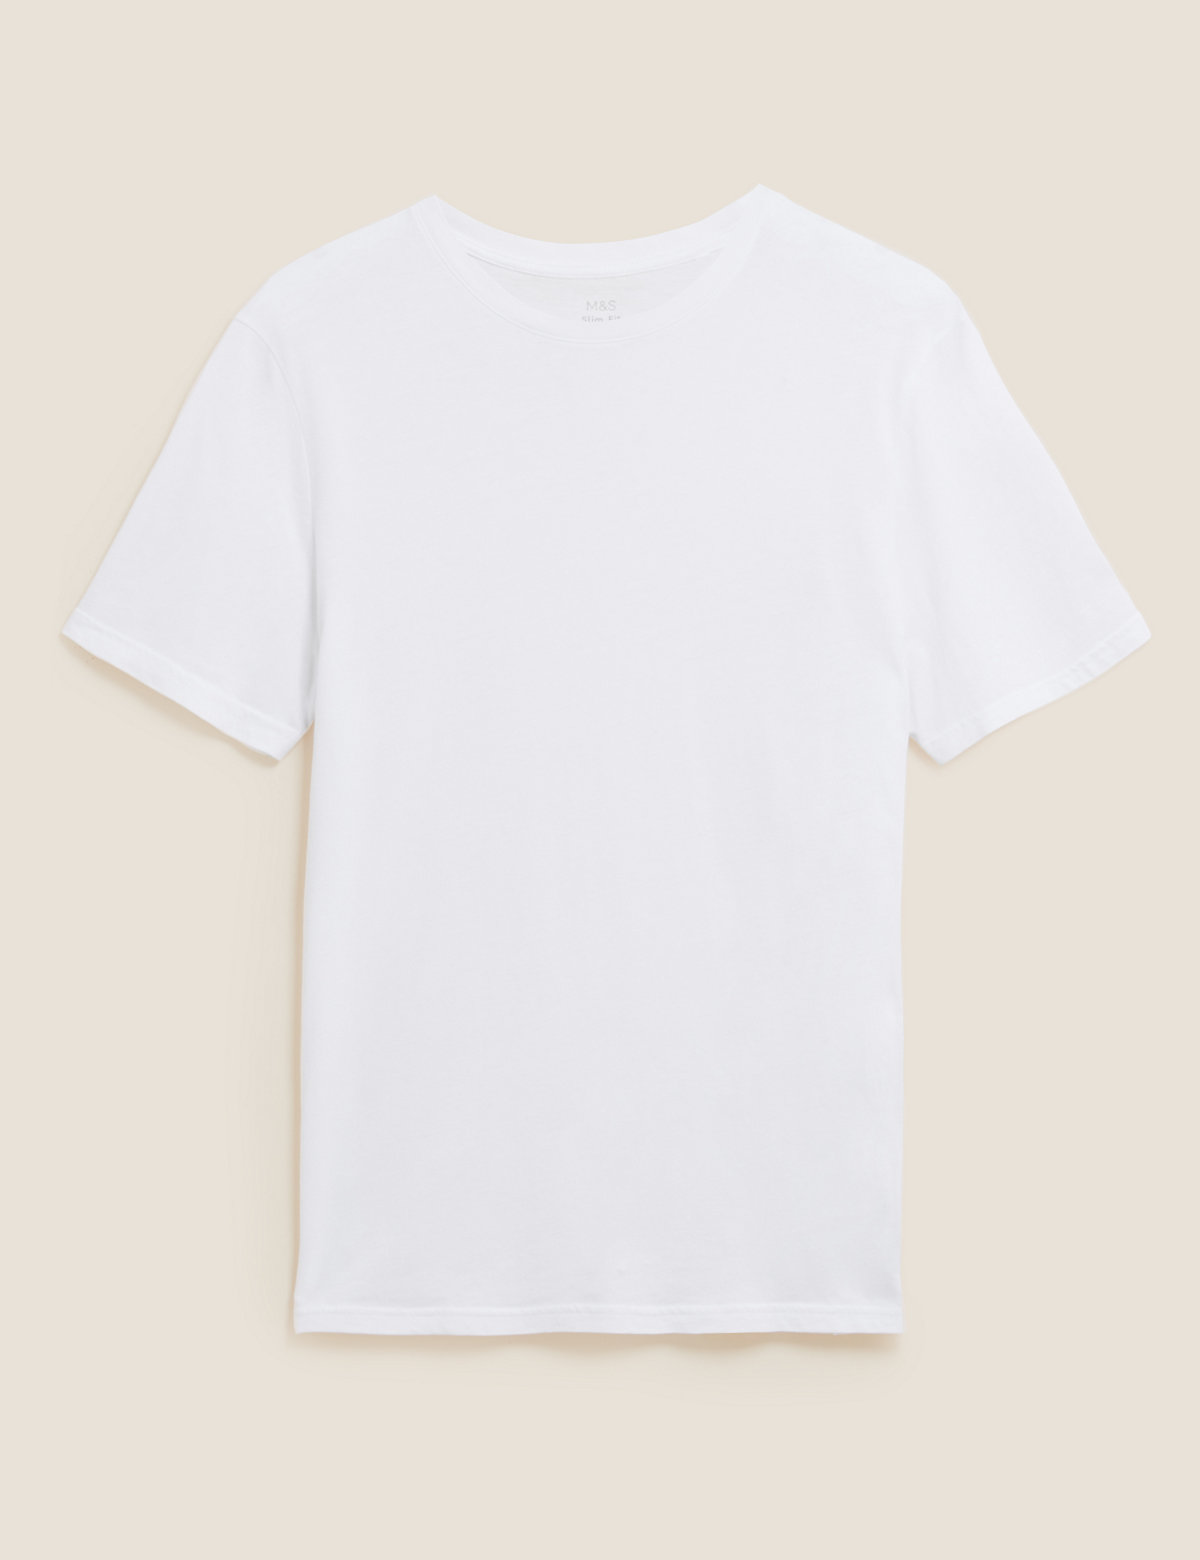 Slim Fit Pure Cotton T-Shirt